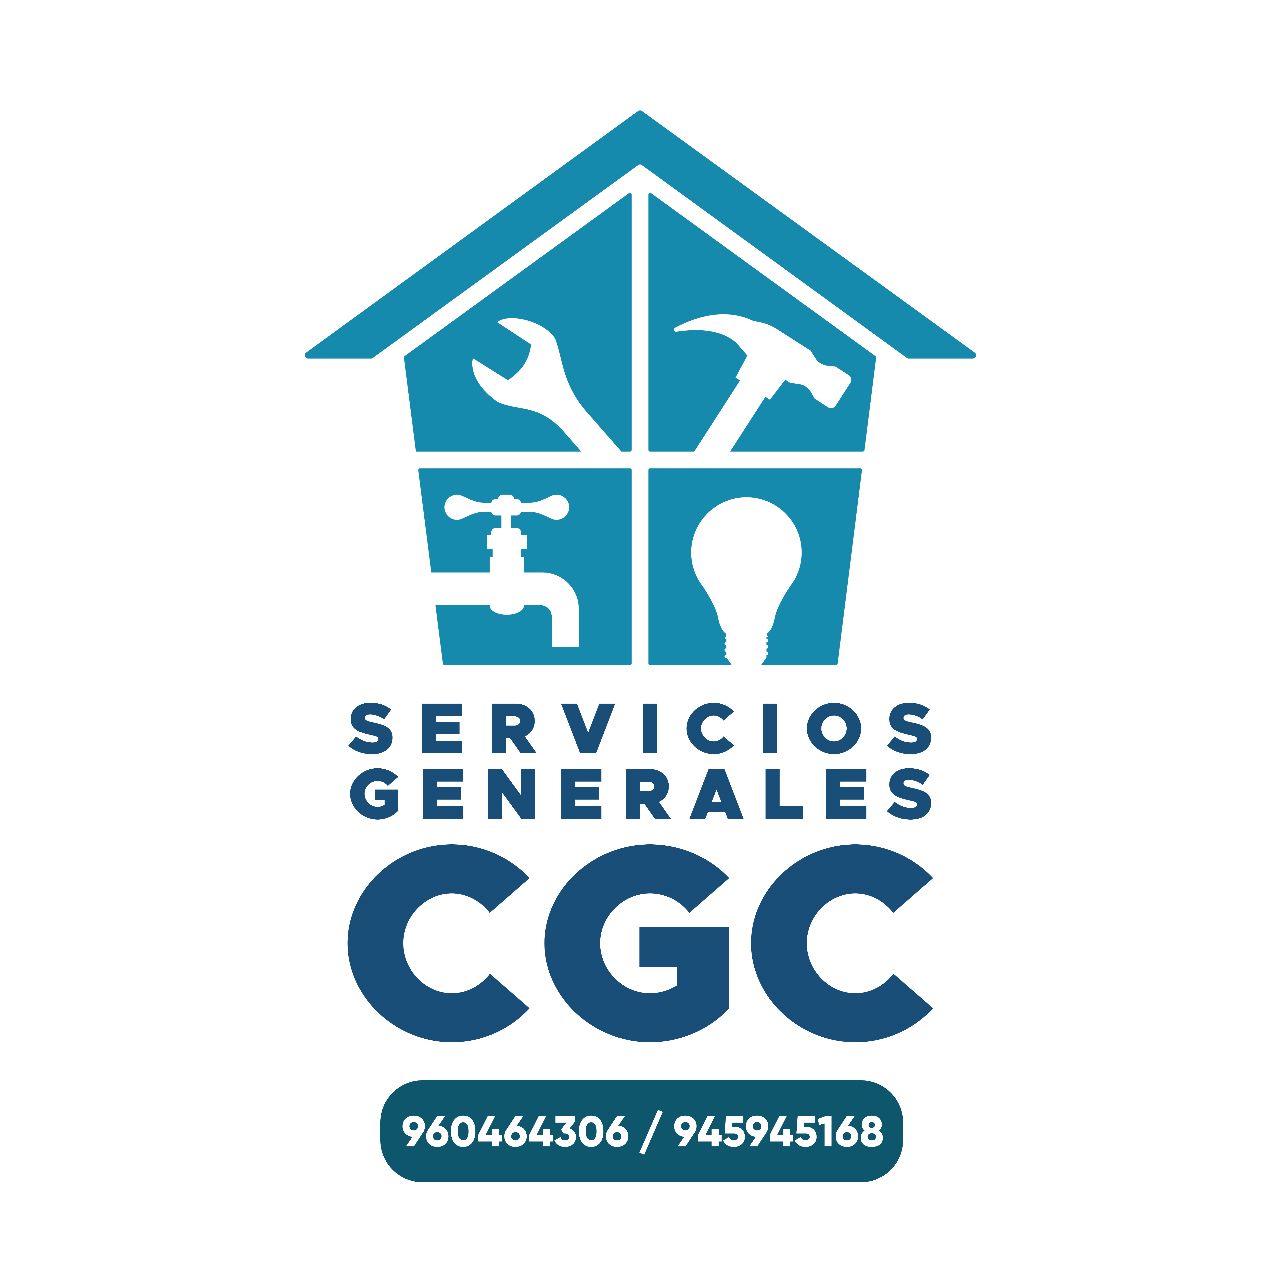 Venta de generadores eléctricos, las mejores marcas - CGC SpA